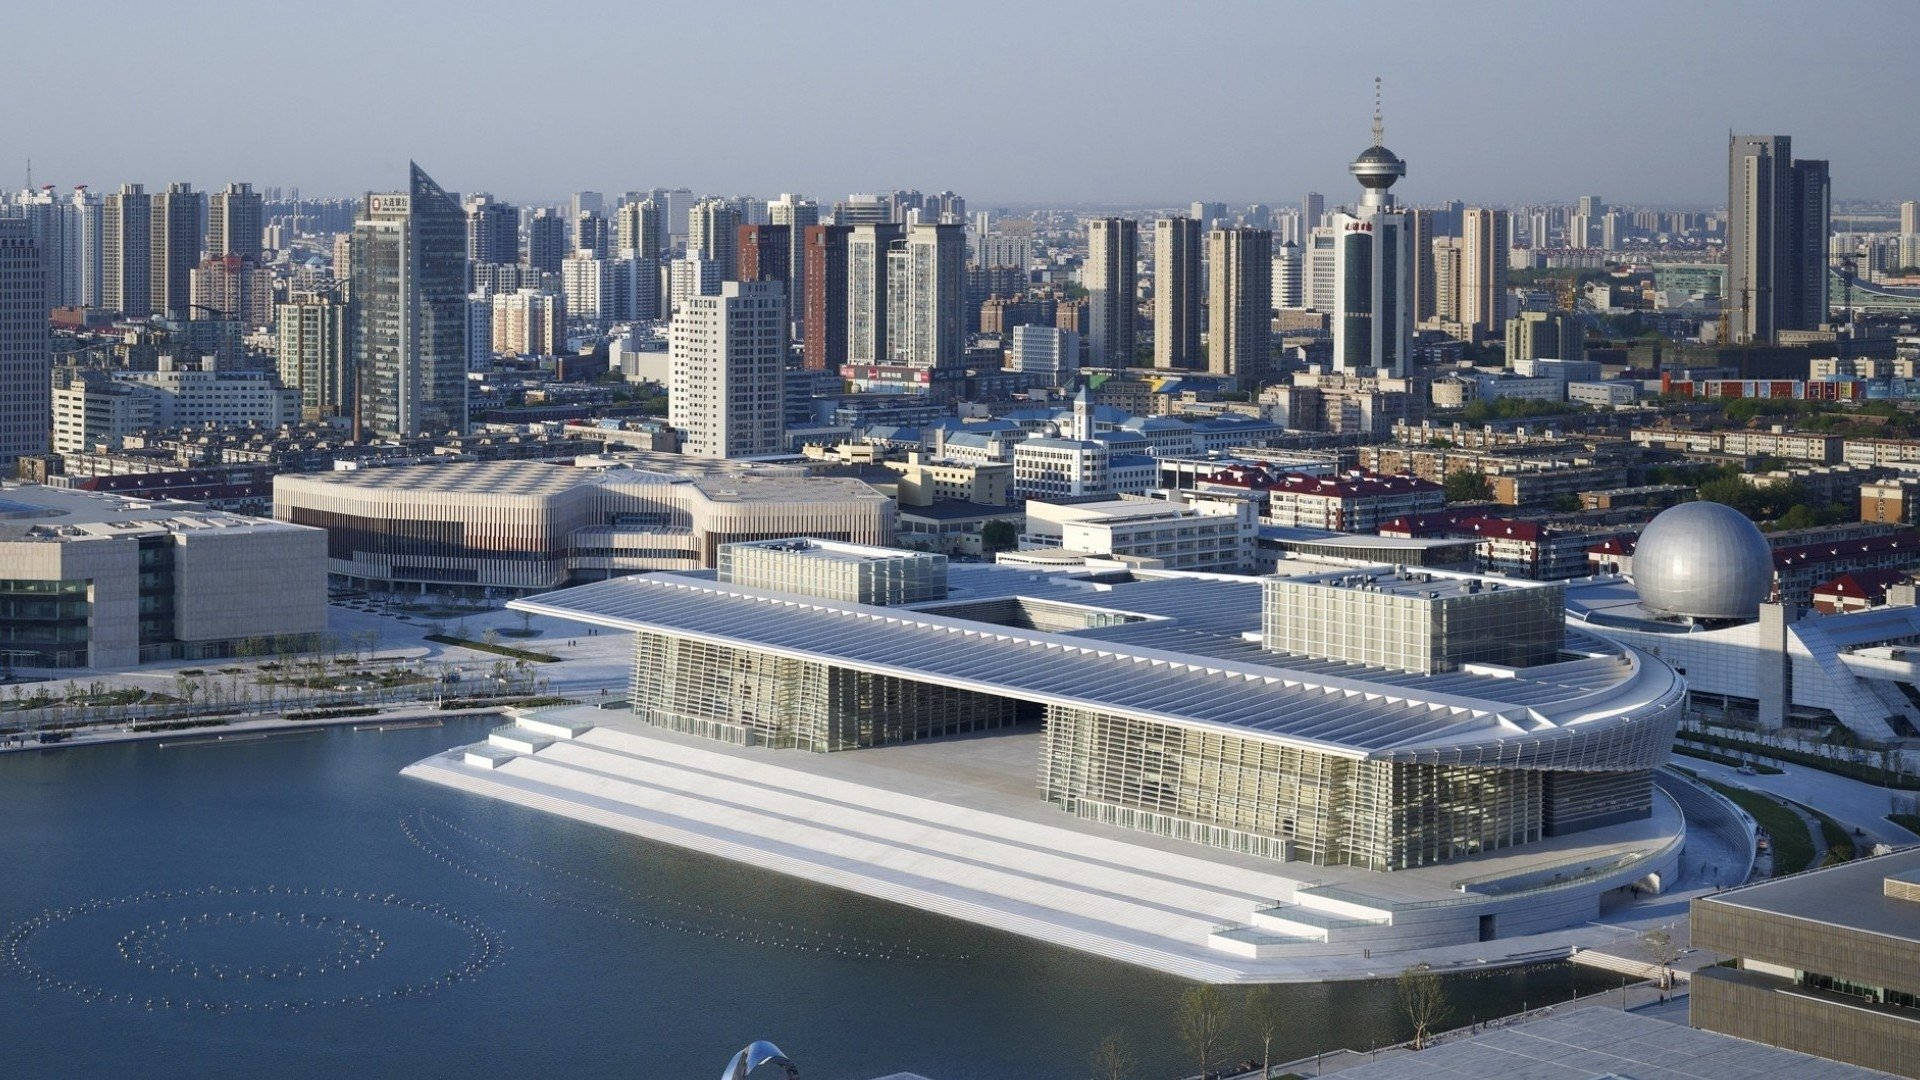 Fazersua Tela Do Dispositivo Brilhar Com O Centro Nacional De Convenções De Tianjin. Papel de Parede